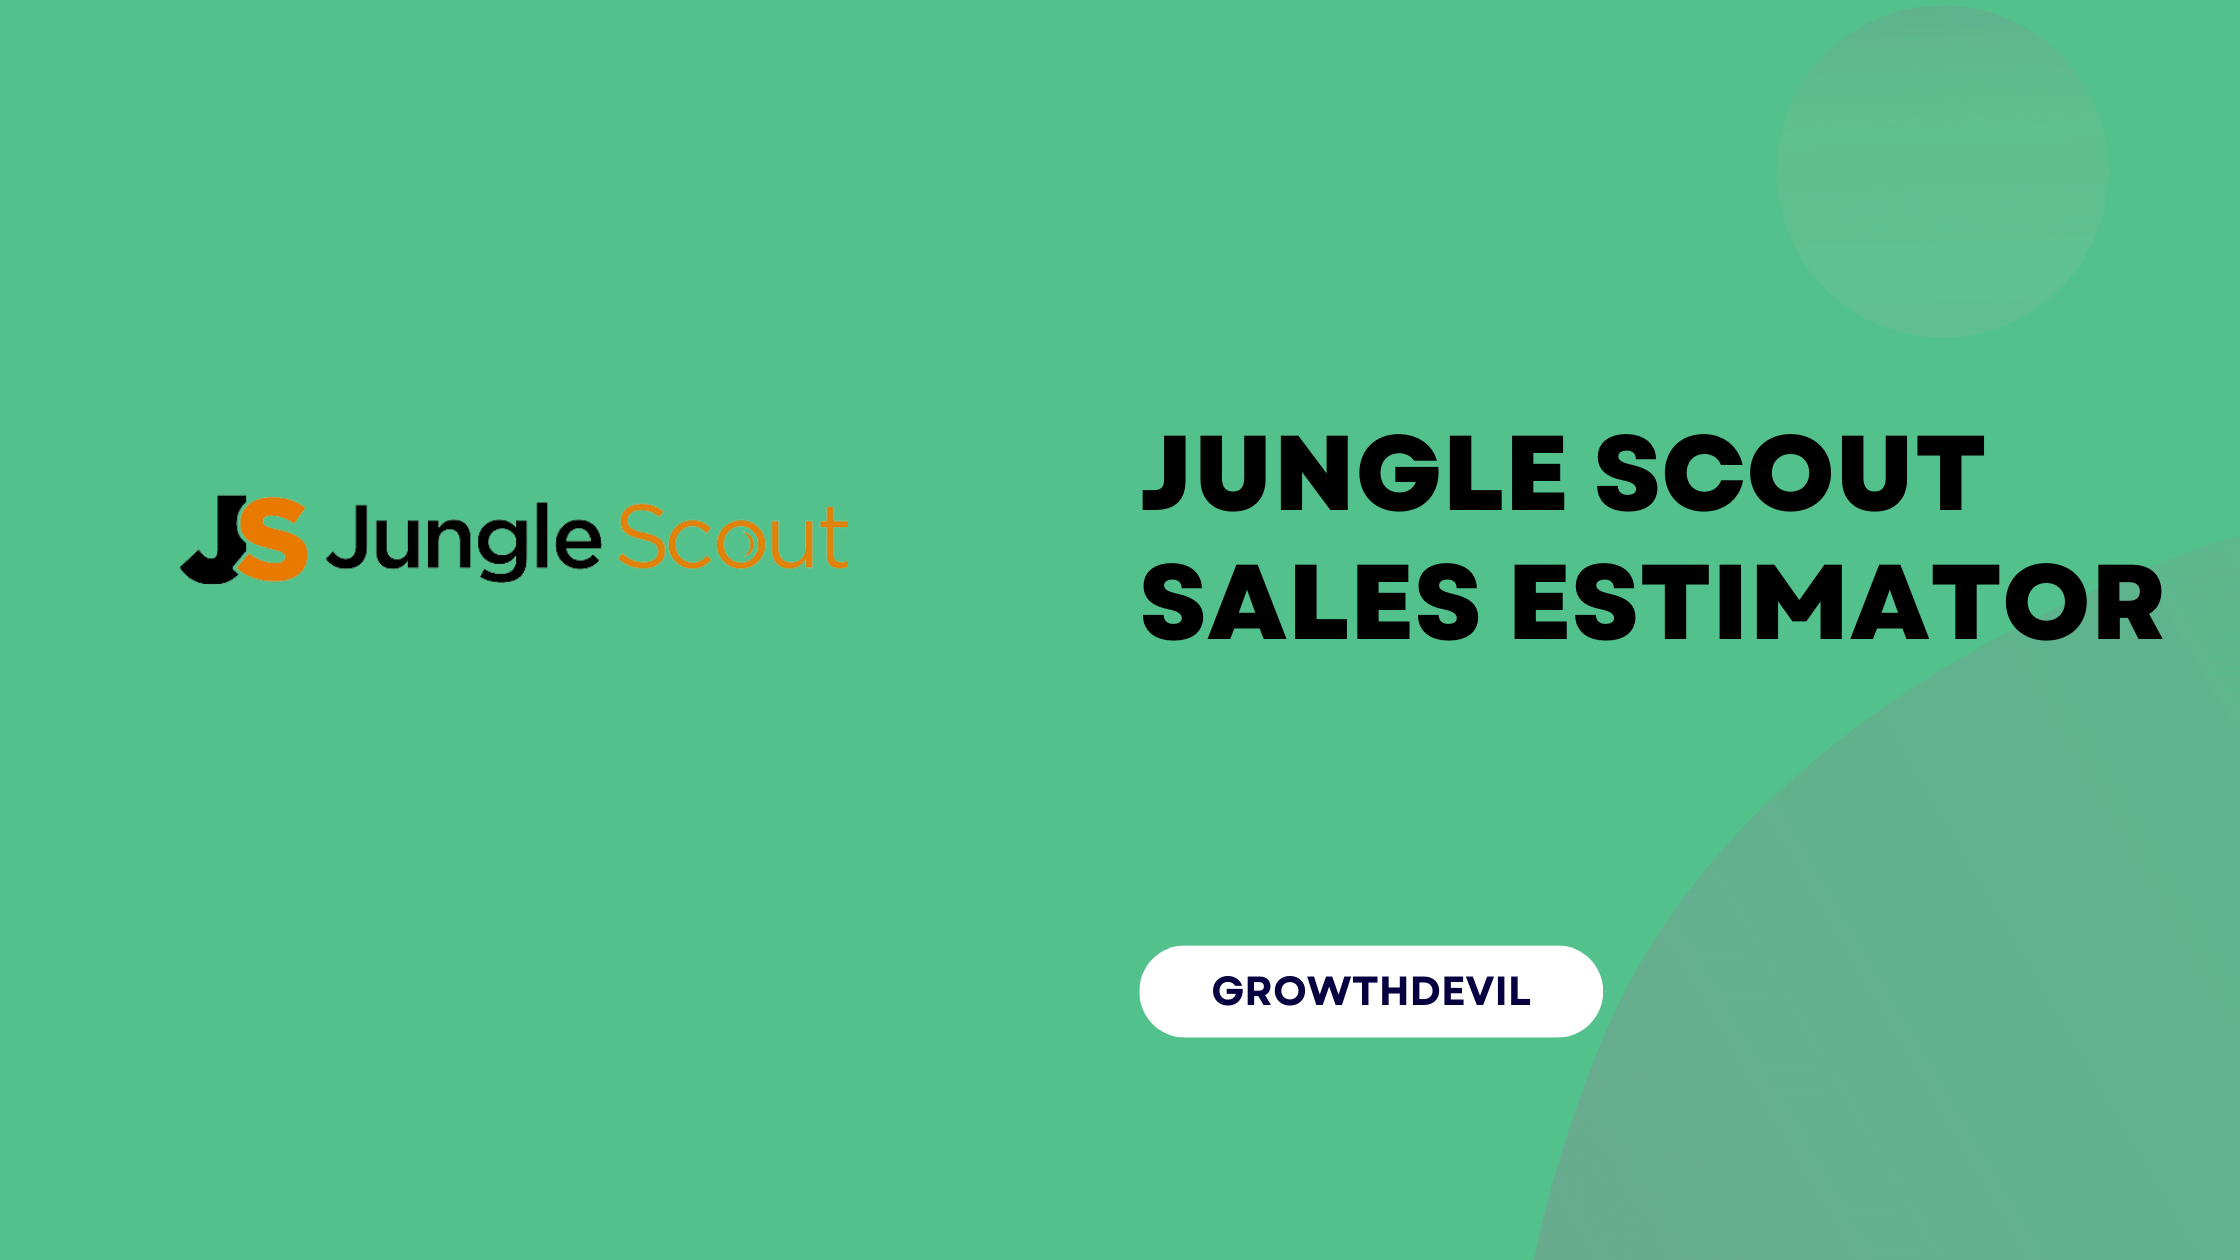 Jungle Scout Sales Estimator - GrowthDevil